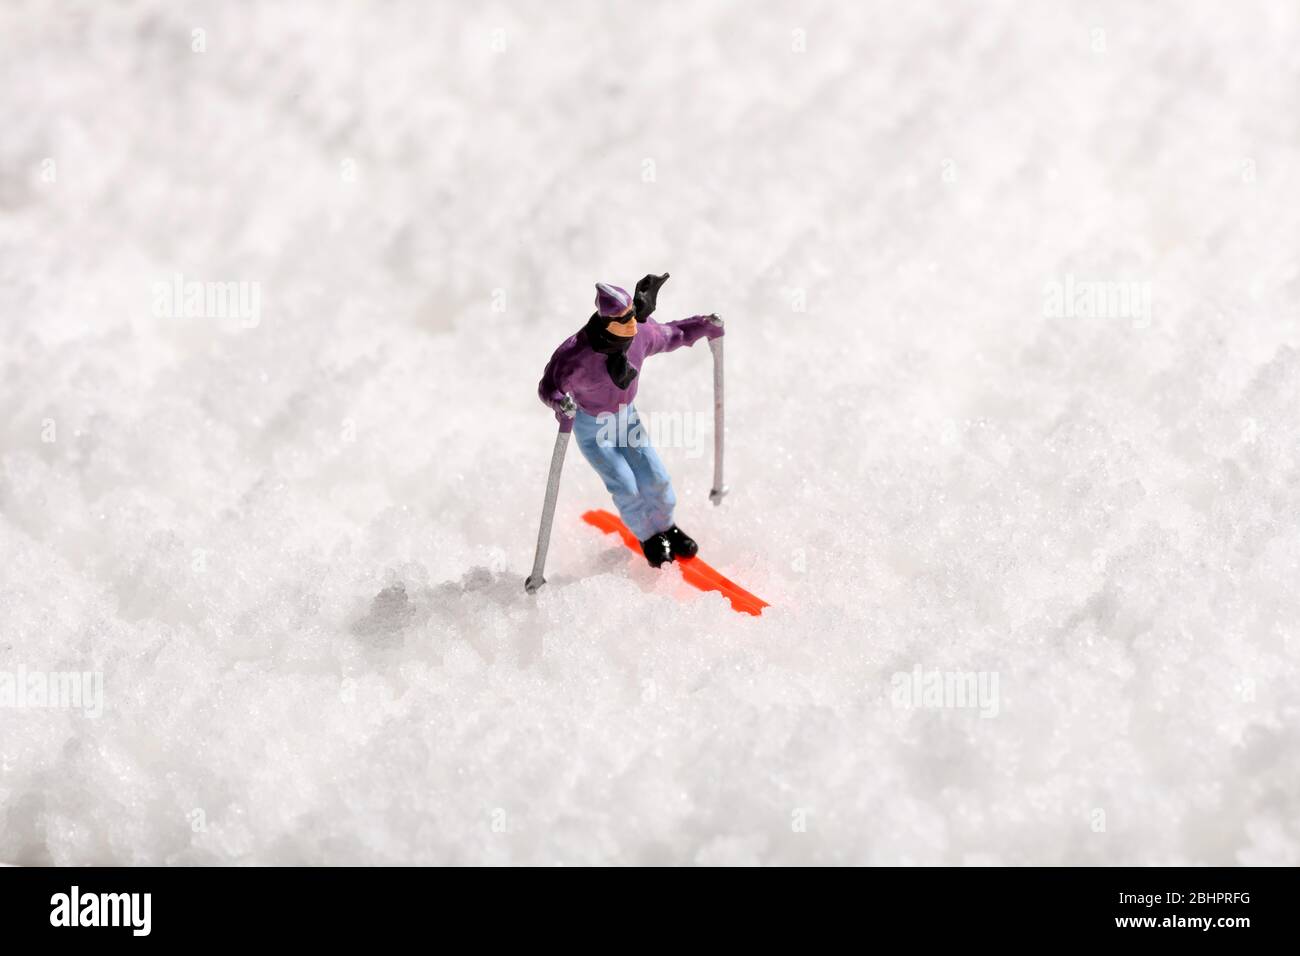 Homme miniature seul ski sur neige blanche fraîche d'hiver centrée dans le cadre avec espace de copie dans un concept d'activité ou de voyage d'hiver Banque D'Images